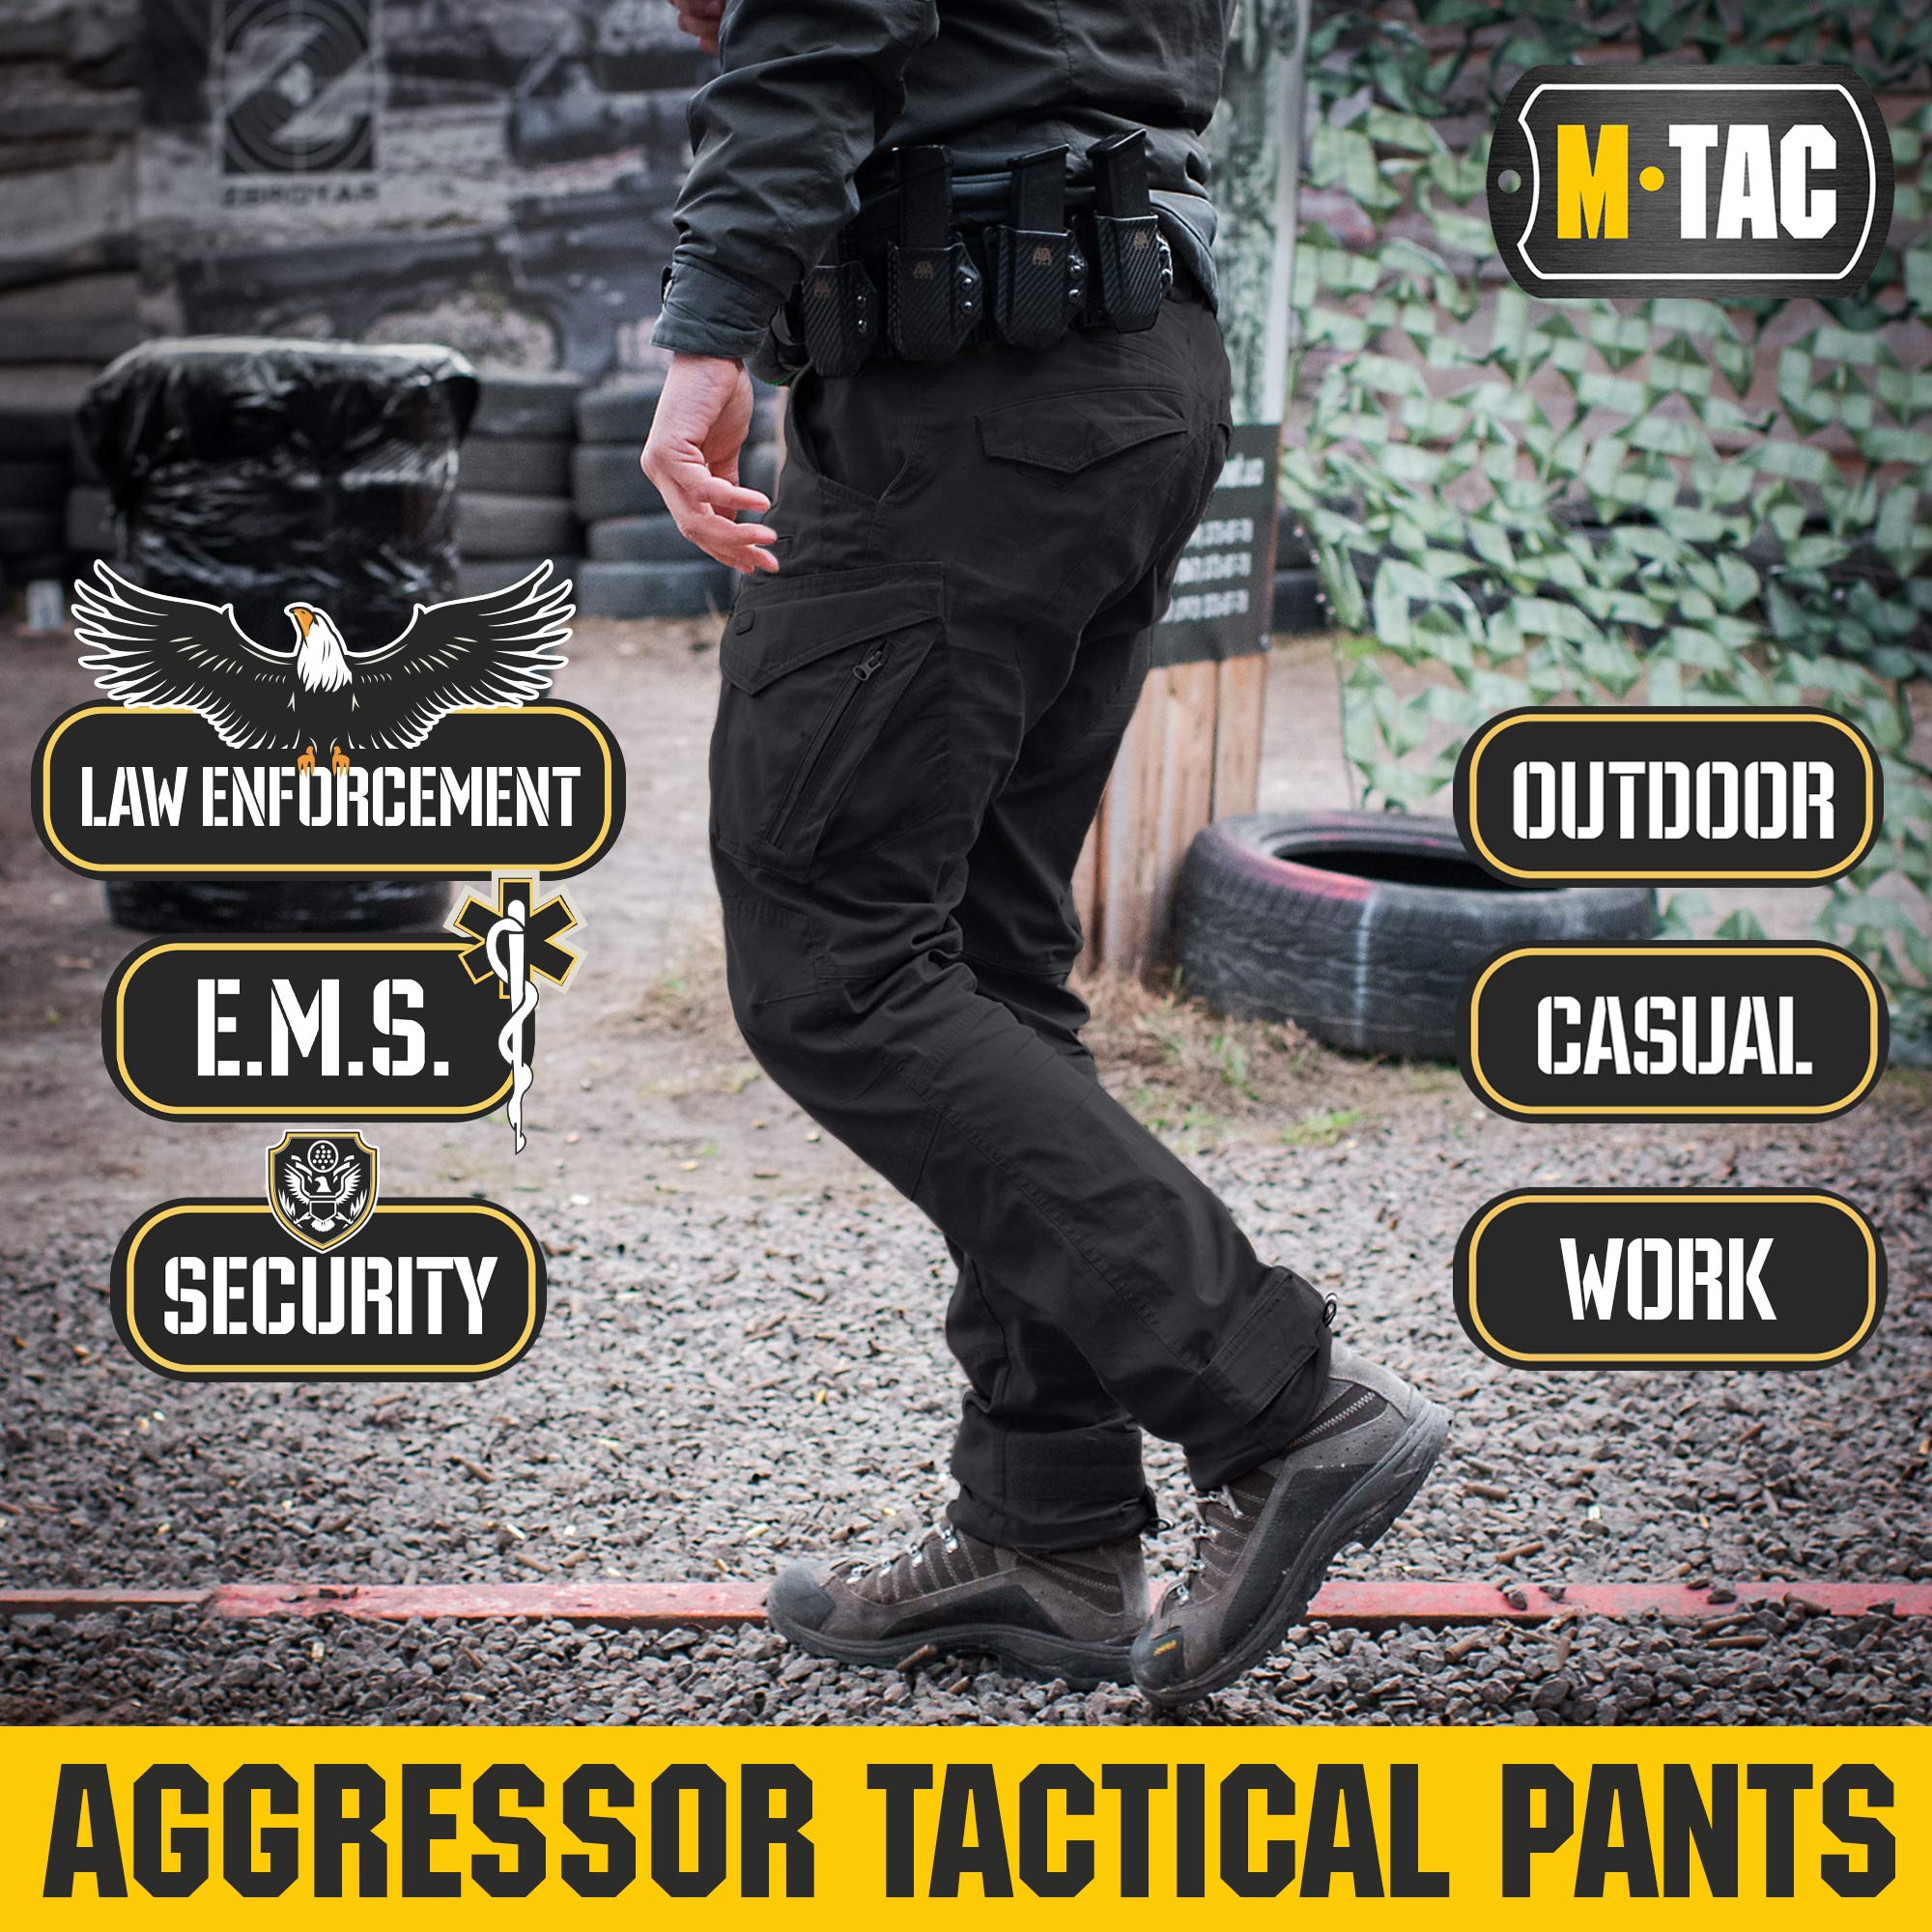 M-Tac Aggressor Flex - Tactical Pants - Men Black Cotton with Cargo Pockets (Black, 34W x 32L)